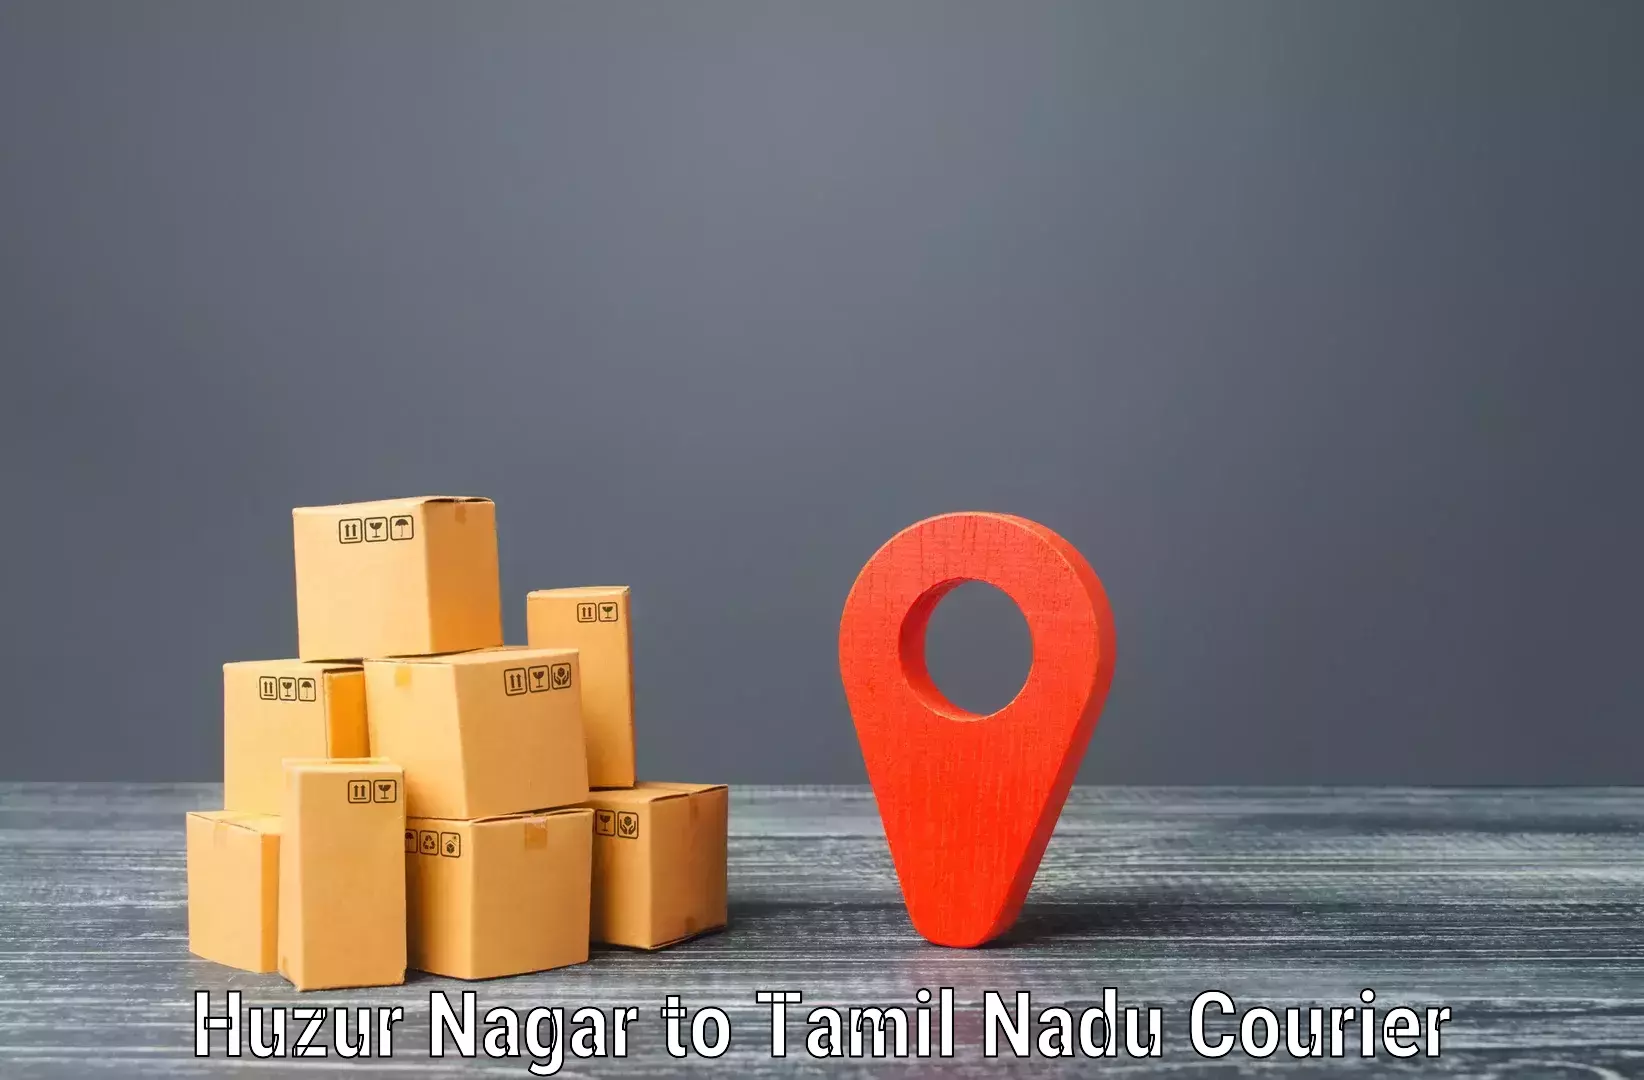 Smart courier technologies Huzur Nagar to Bhavani